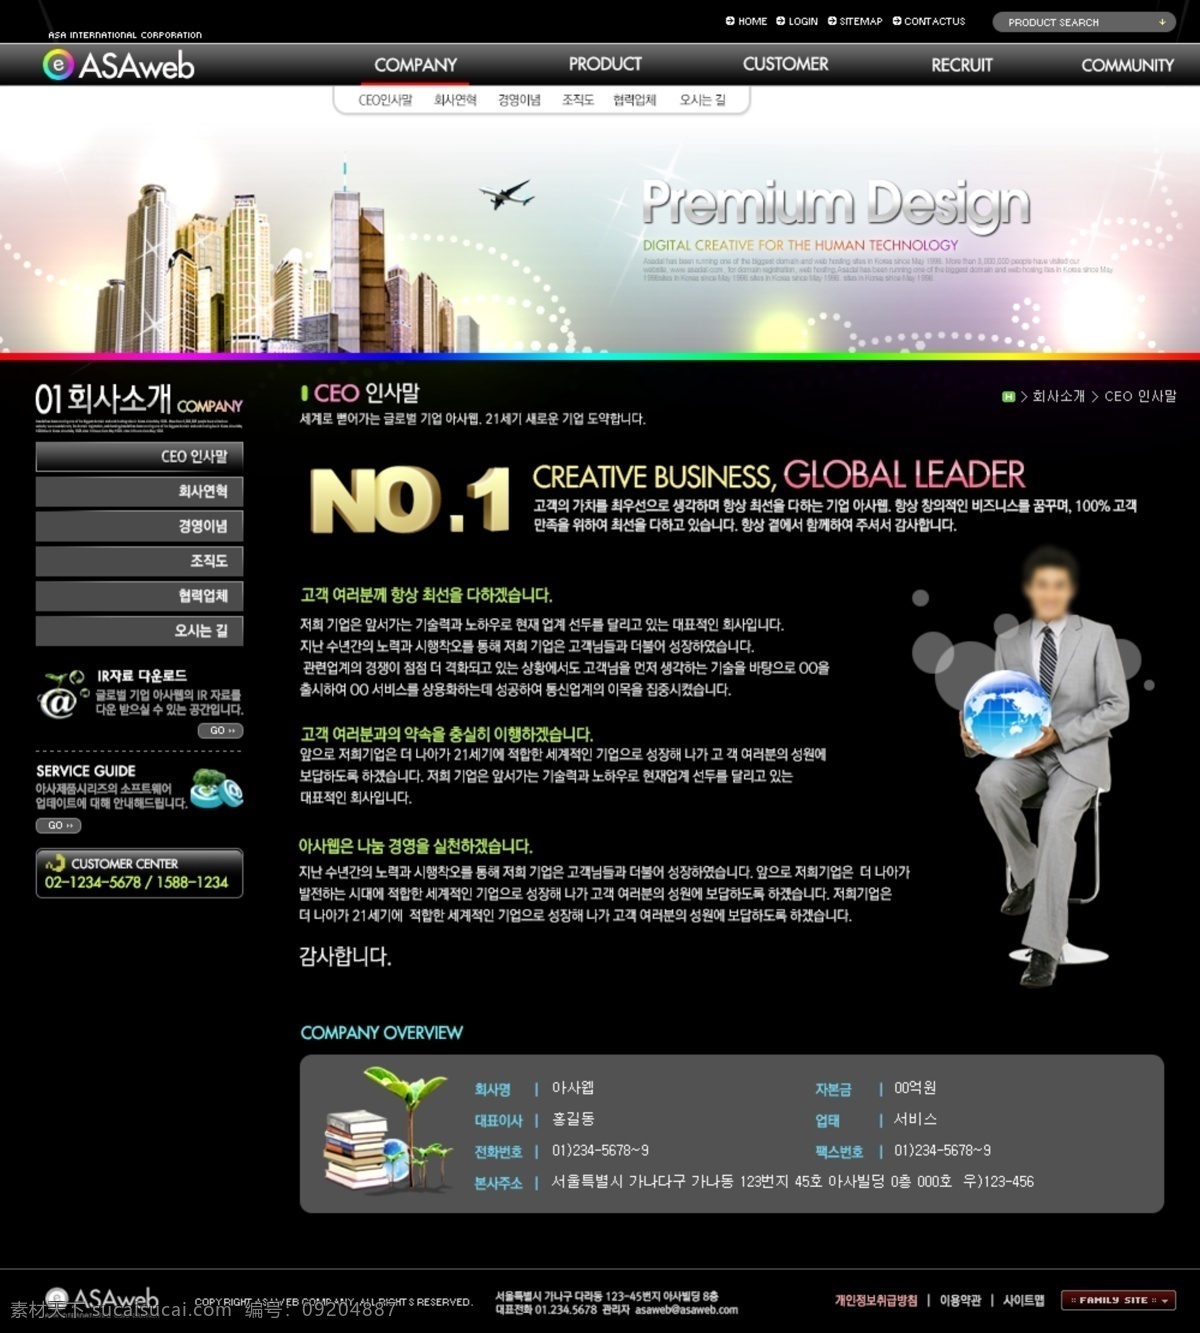 电子产品 网页模板 源文件 酷站 网页设计 模板下载 酷站网页设计 酷站网页 液晶屏 炫酷网站 韩文模板 网页素材